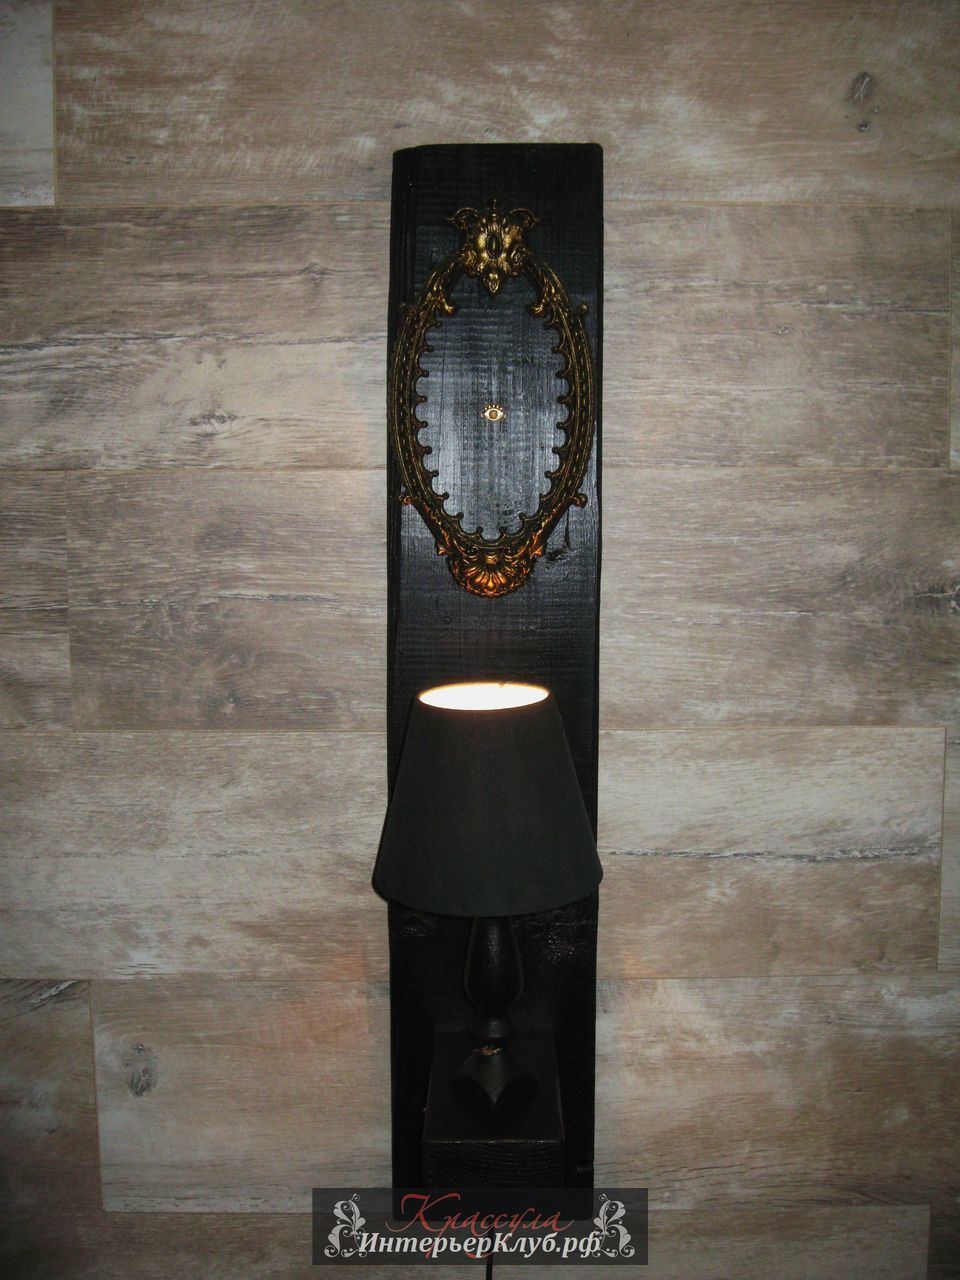 103 Светильник Око - амбарная доска, с элементами декора, цвет черный - золото. Эксклюзивные светильники ручной работы